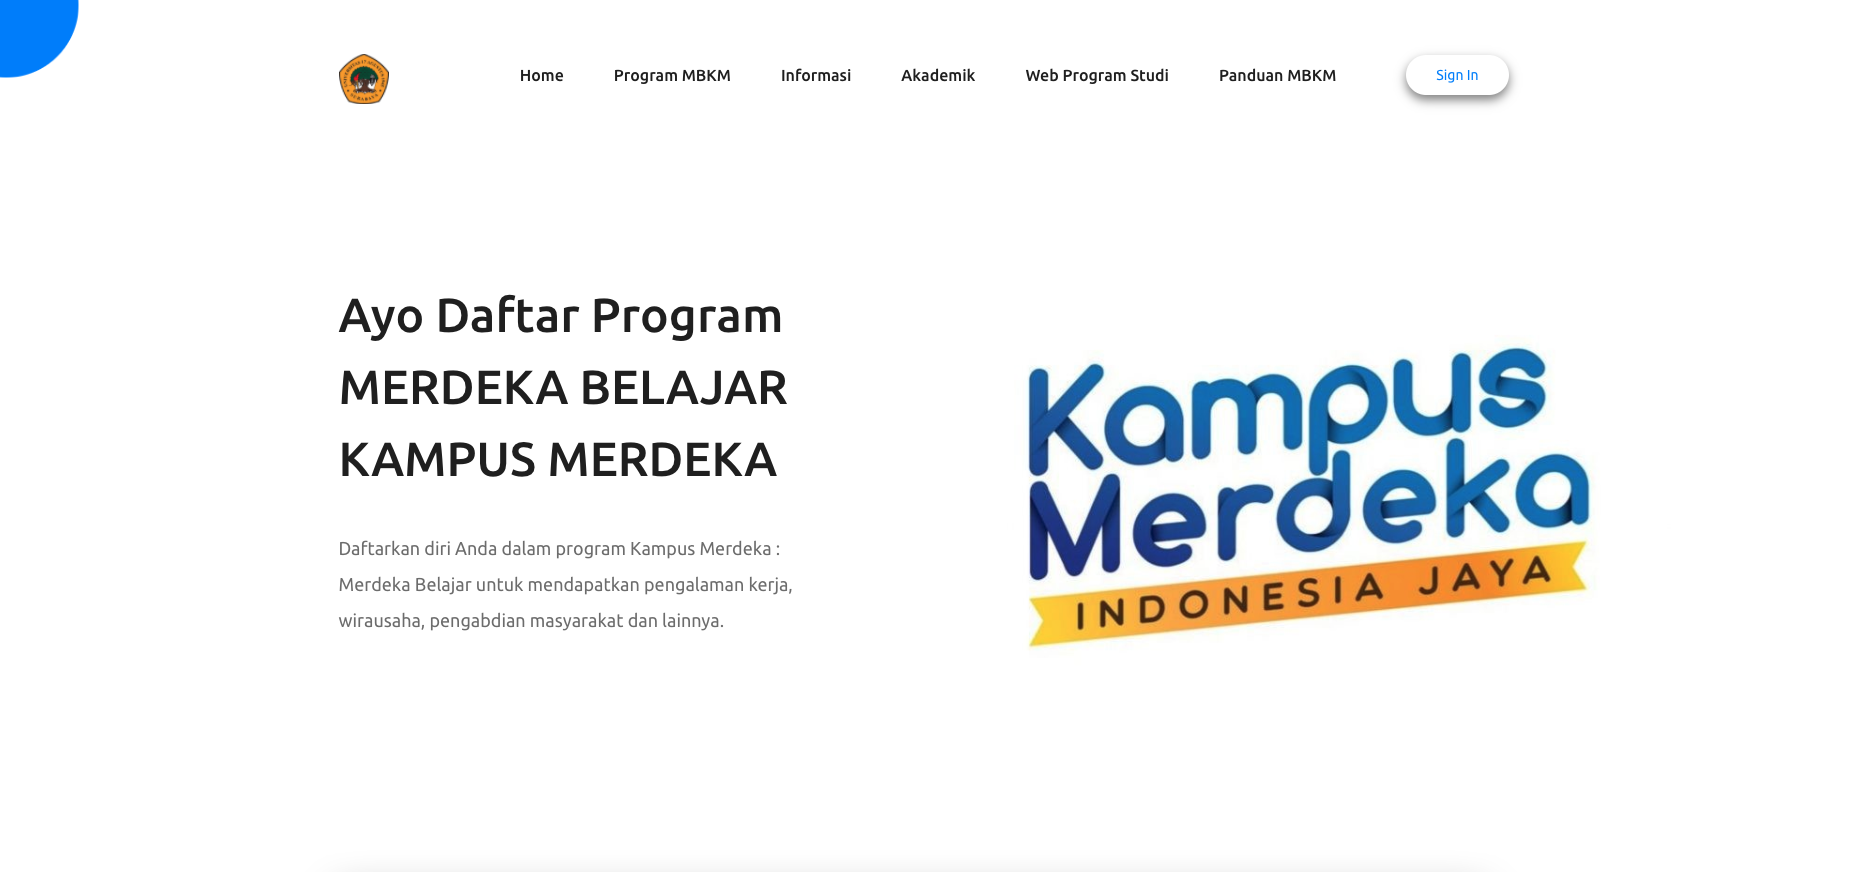 Pengembangan Sistem Manajemen MBKM Perguruan Tinggi – Untag Surabaya